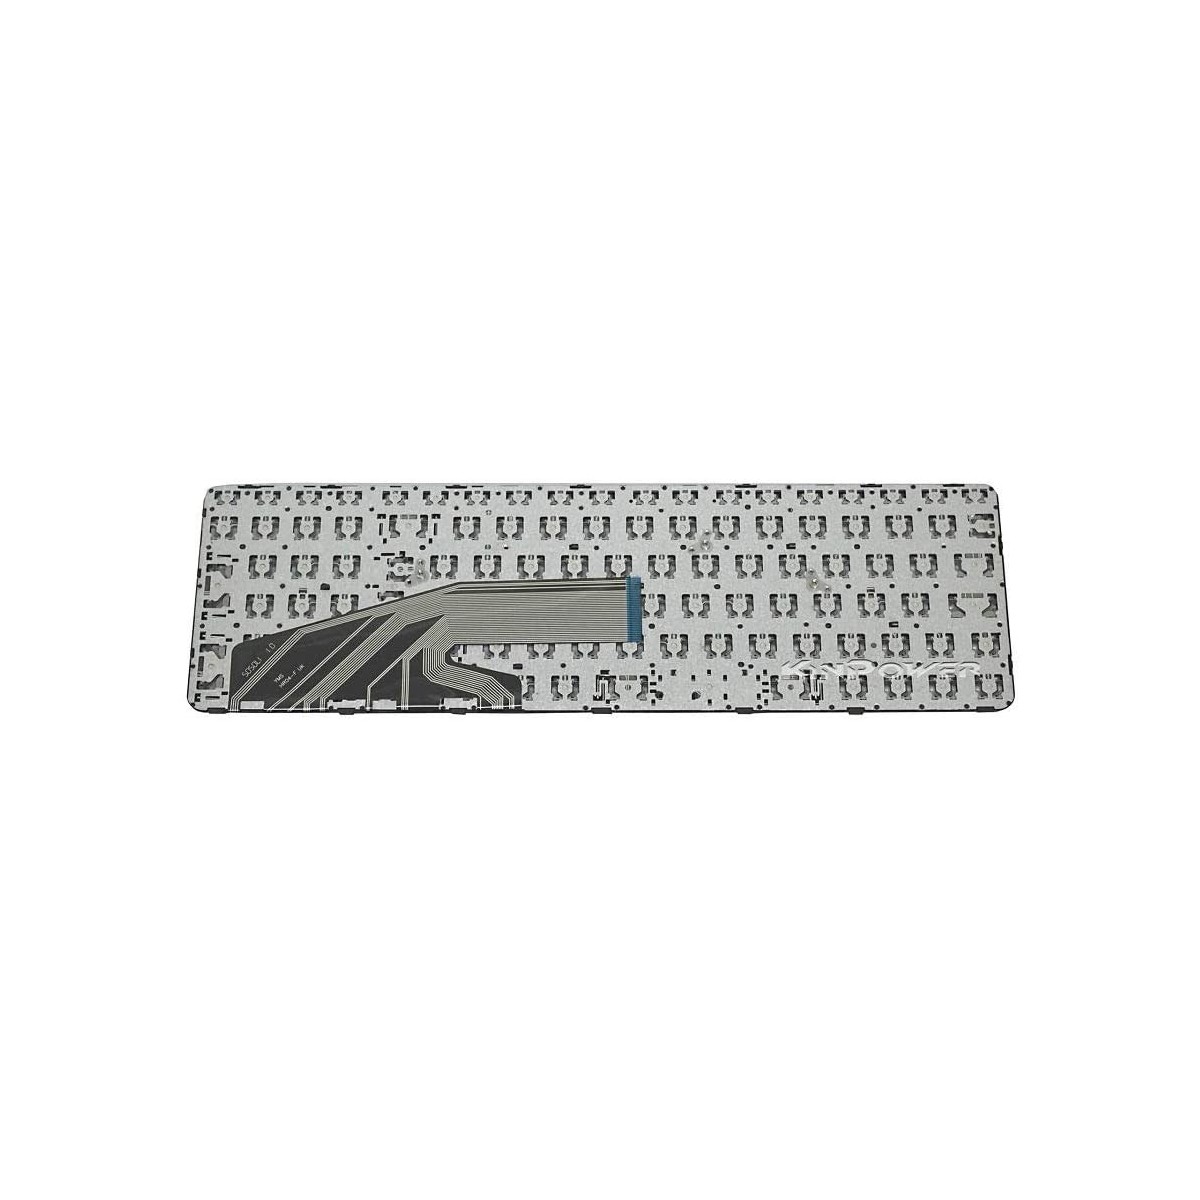 Clavier Français compatible Pour HP ProBook 450 G4 SERIES SN6143BL2